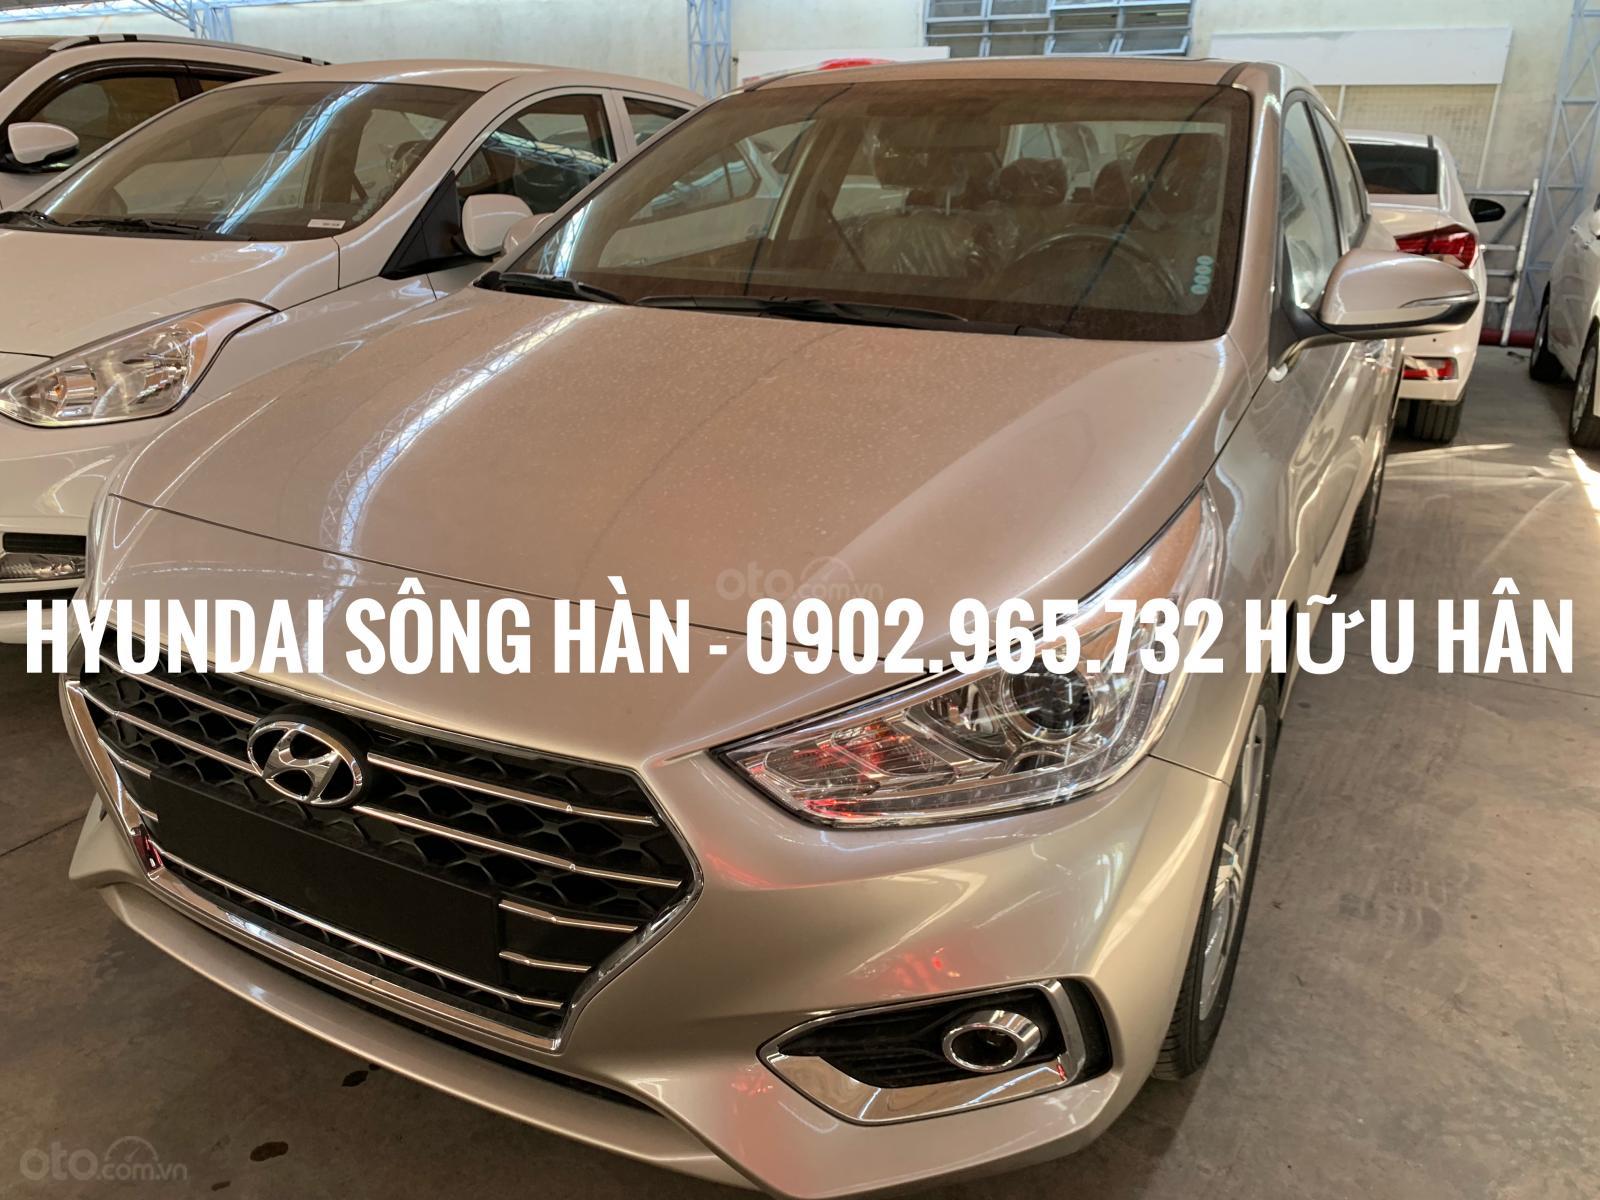 Hyundai Accent 2019 - Hyundai Sông Hàn Đà Nẵng bán Hyundai Accent 2019, LH : Hữu Hân 0902 965 732